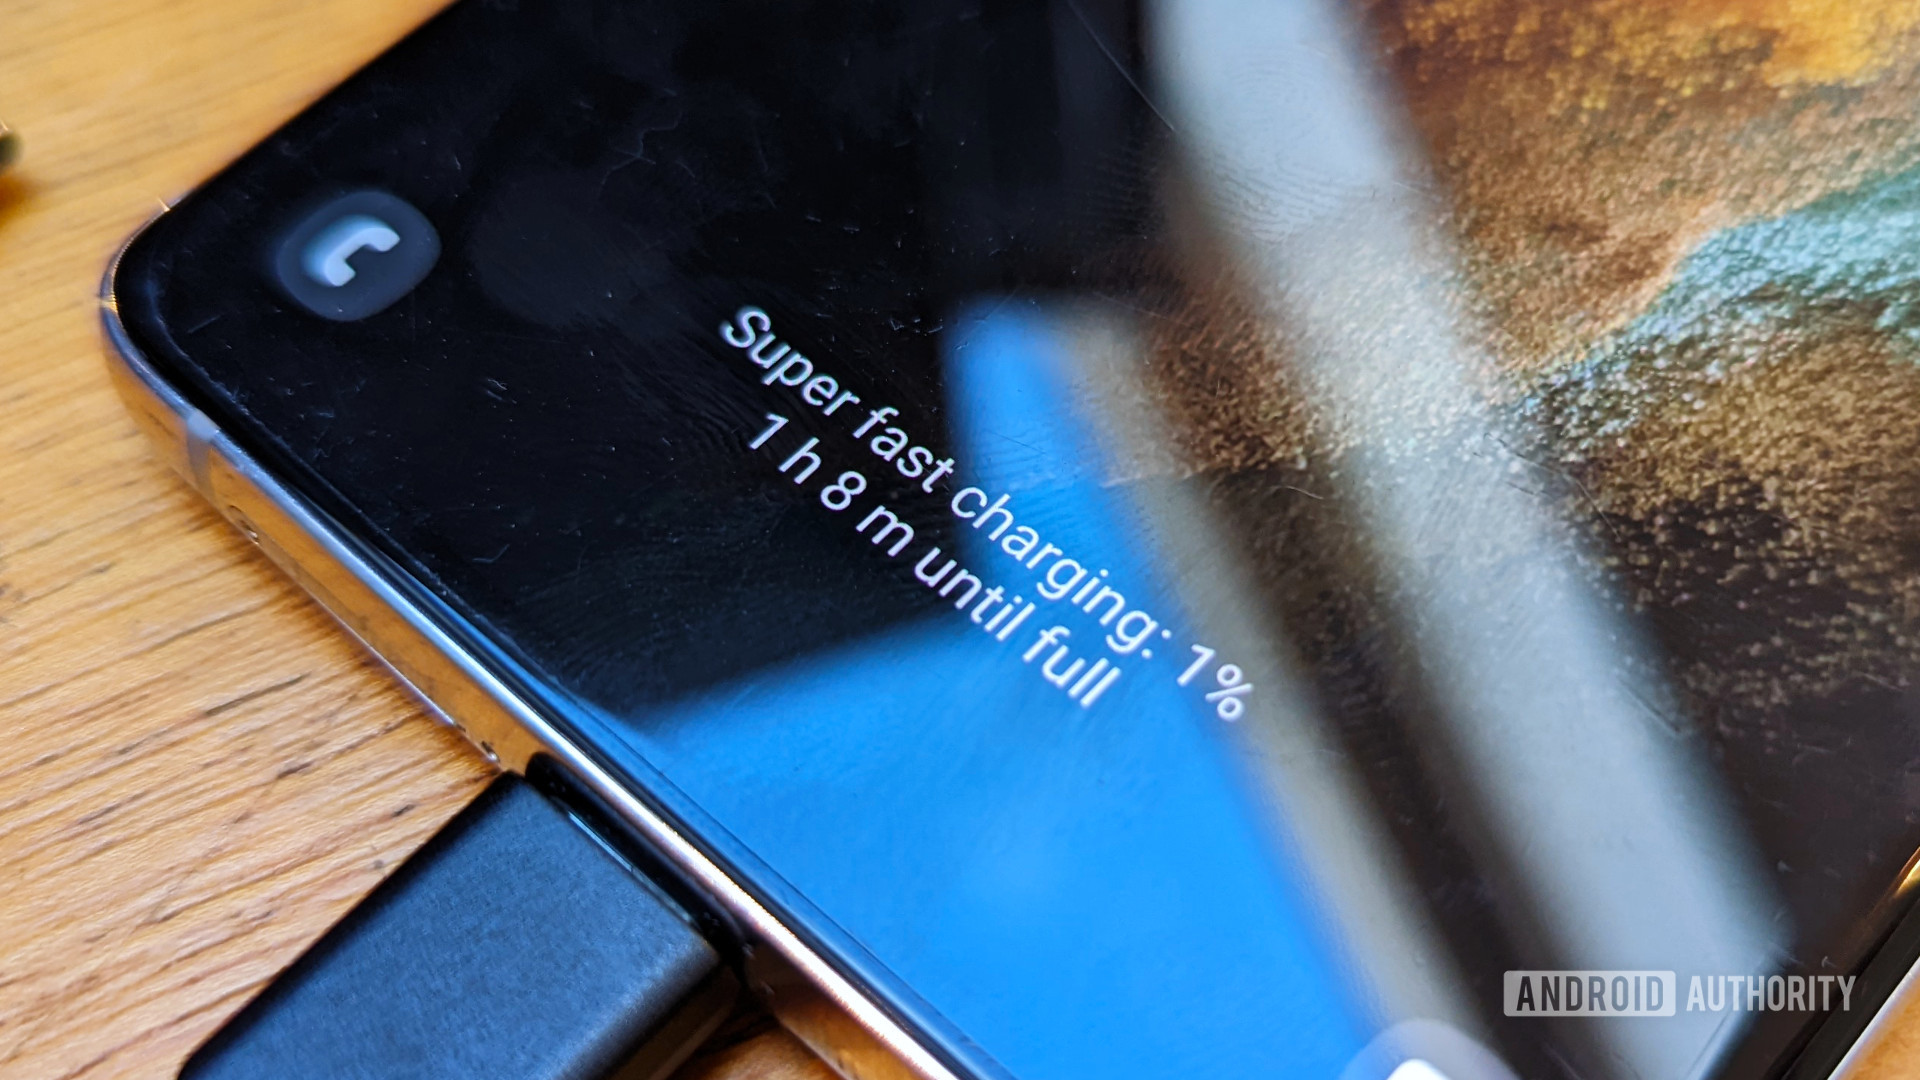 Ekranda Samsung Süper Hızlı Şarj yazısı